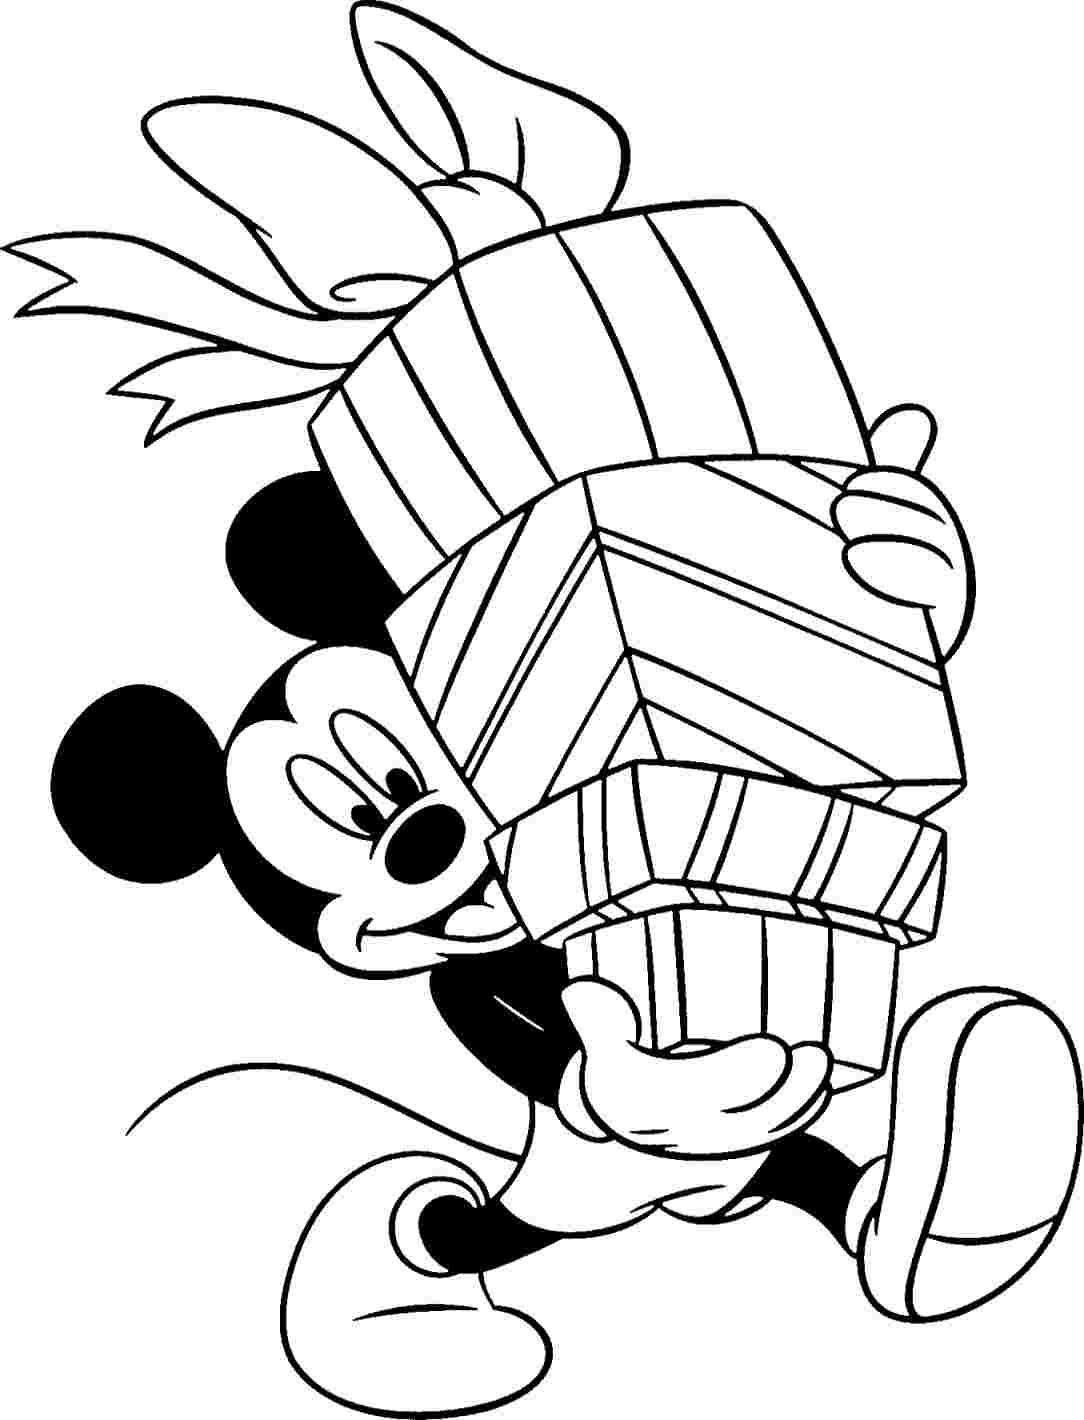 Chuột Mickey mang nhiều quà - tranh tô màu